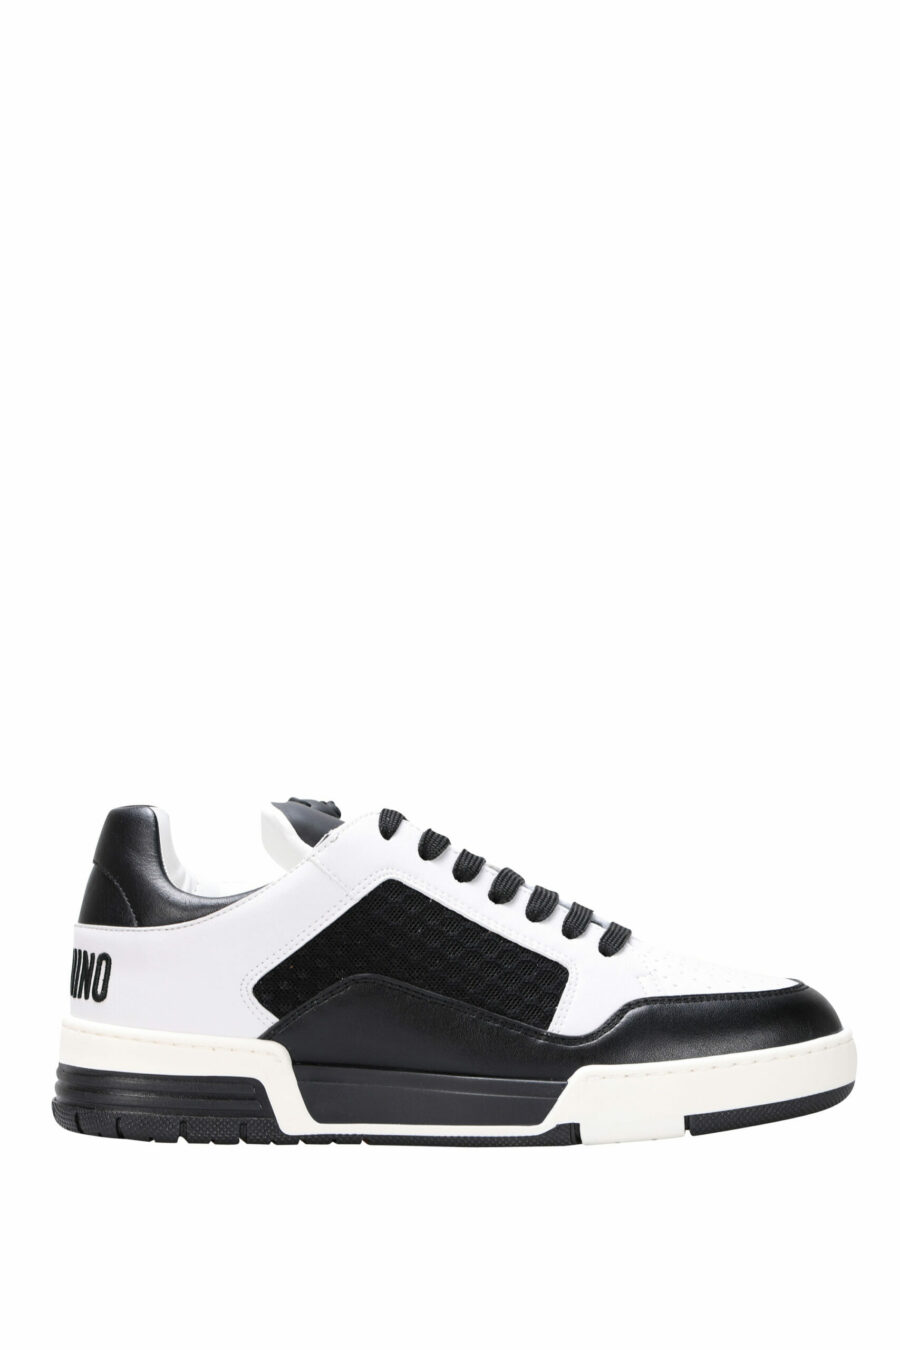 Zapatillas bicolor negras y blanco "kevin40" con minilogo - 8054388024457 scaled